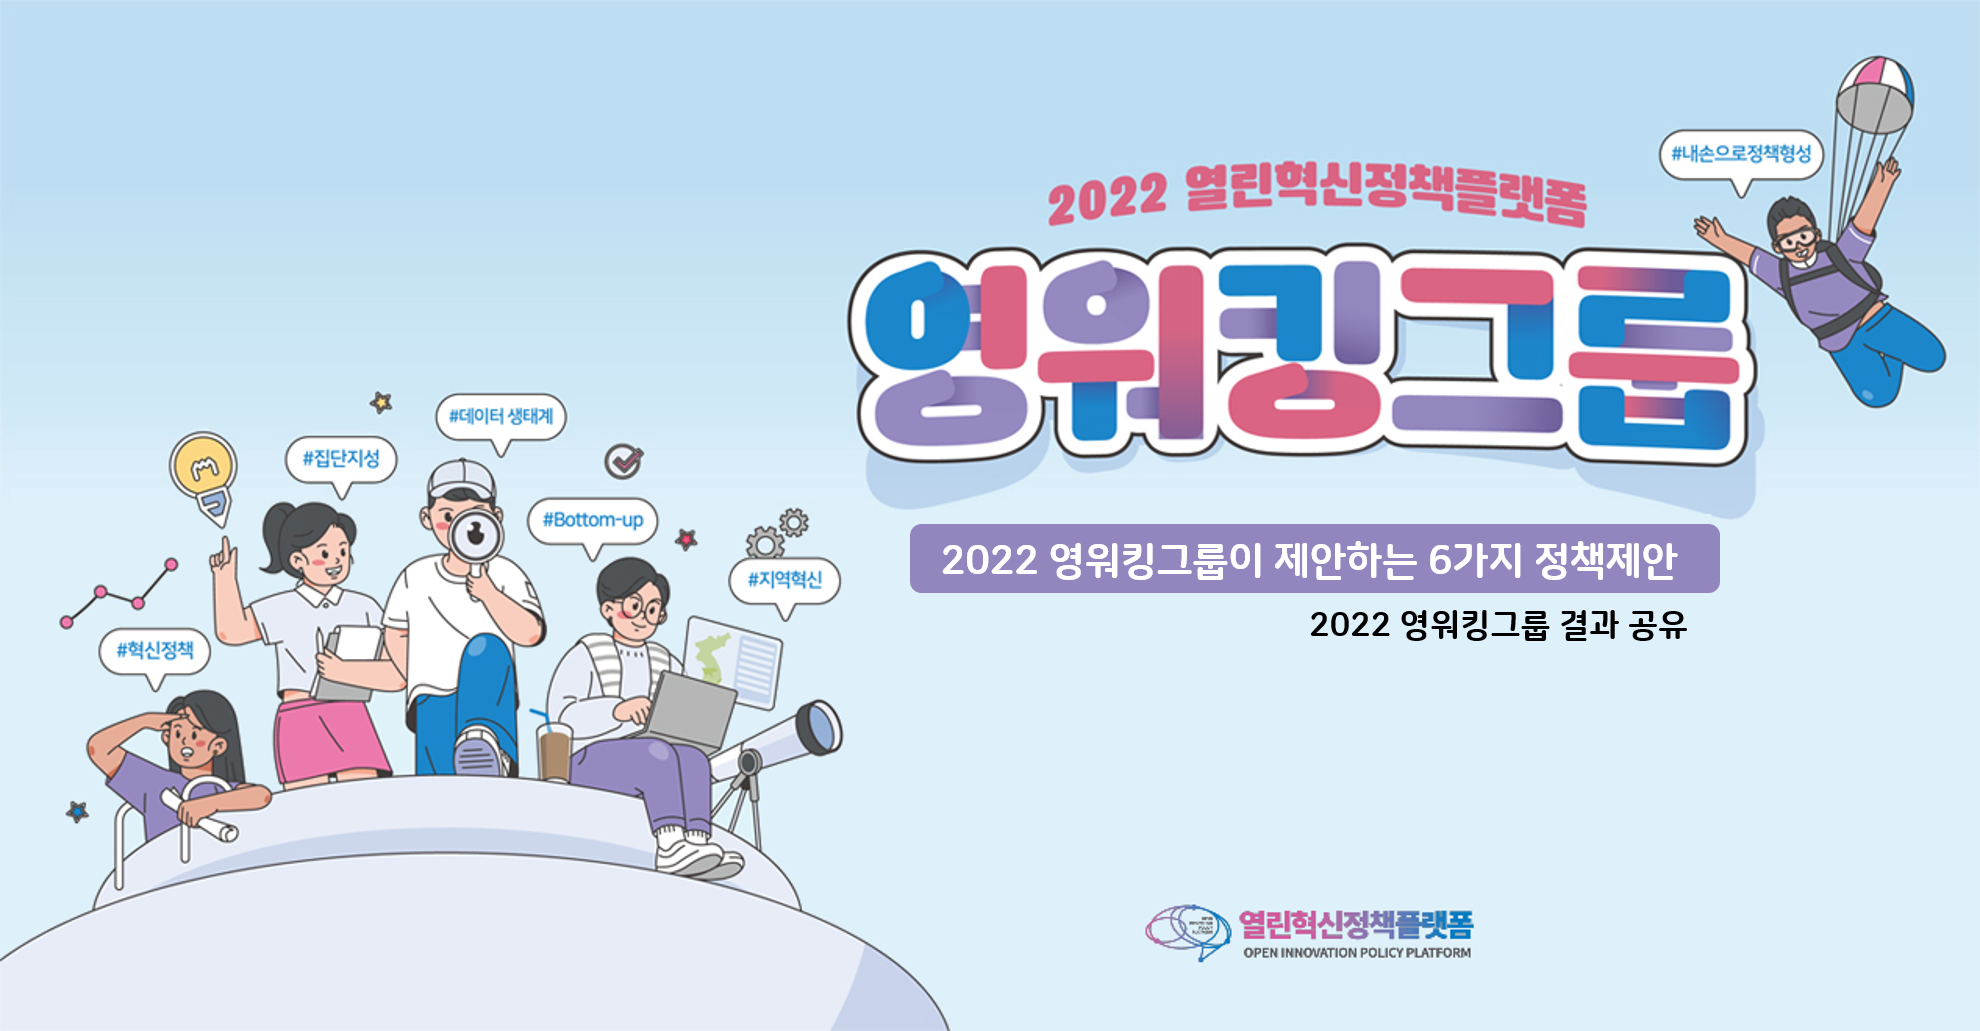 2022 영워킹그룹 결과공유